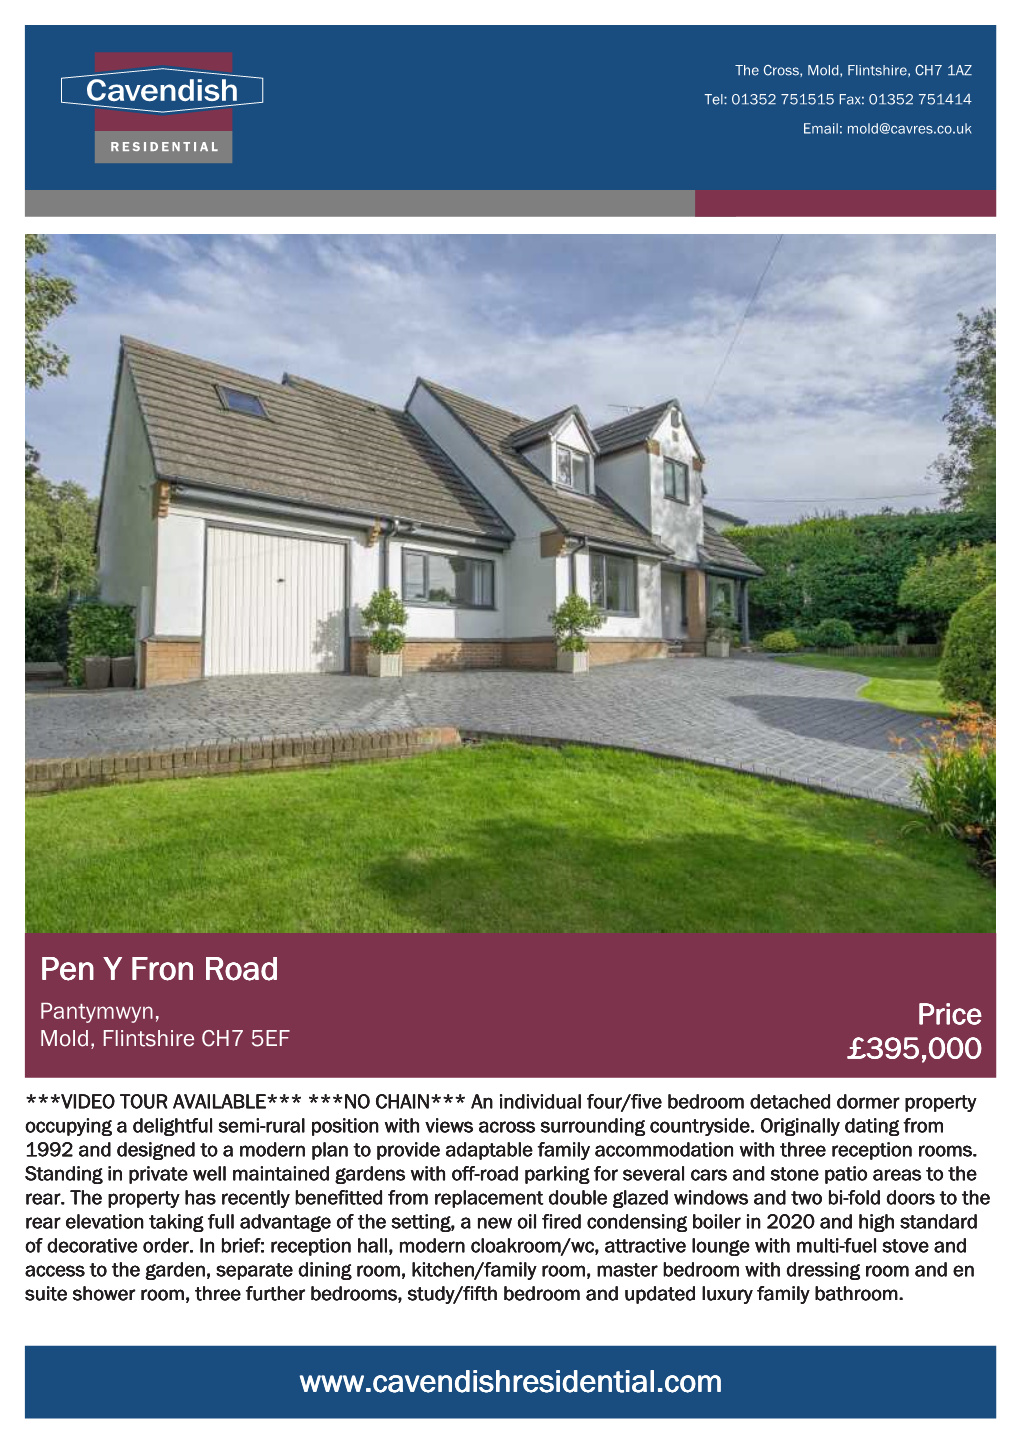 Pen Y Fron Road Pantymwyn, Price Mold, Flintshire CH7 5EF £395,000